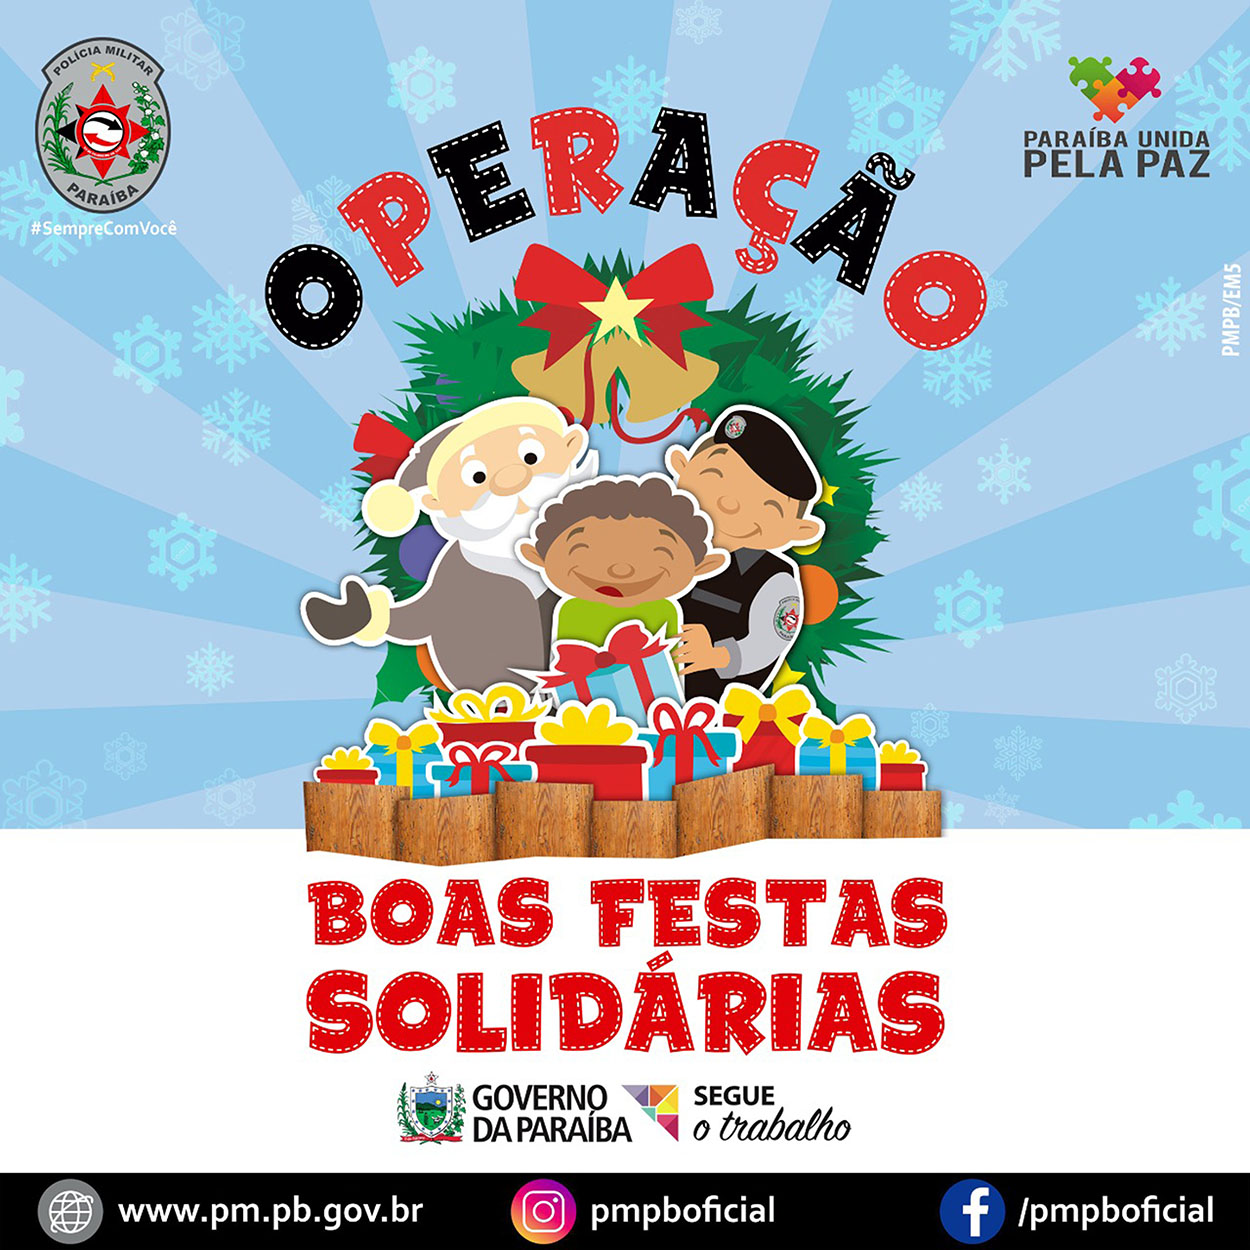 Polícia Militar da Paraíba lança "Operação Boas Festas Solidárias" para arrecadar alimentos